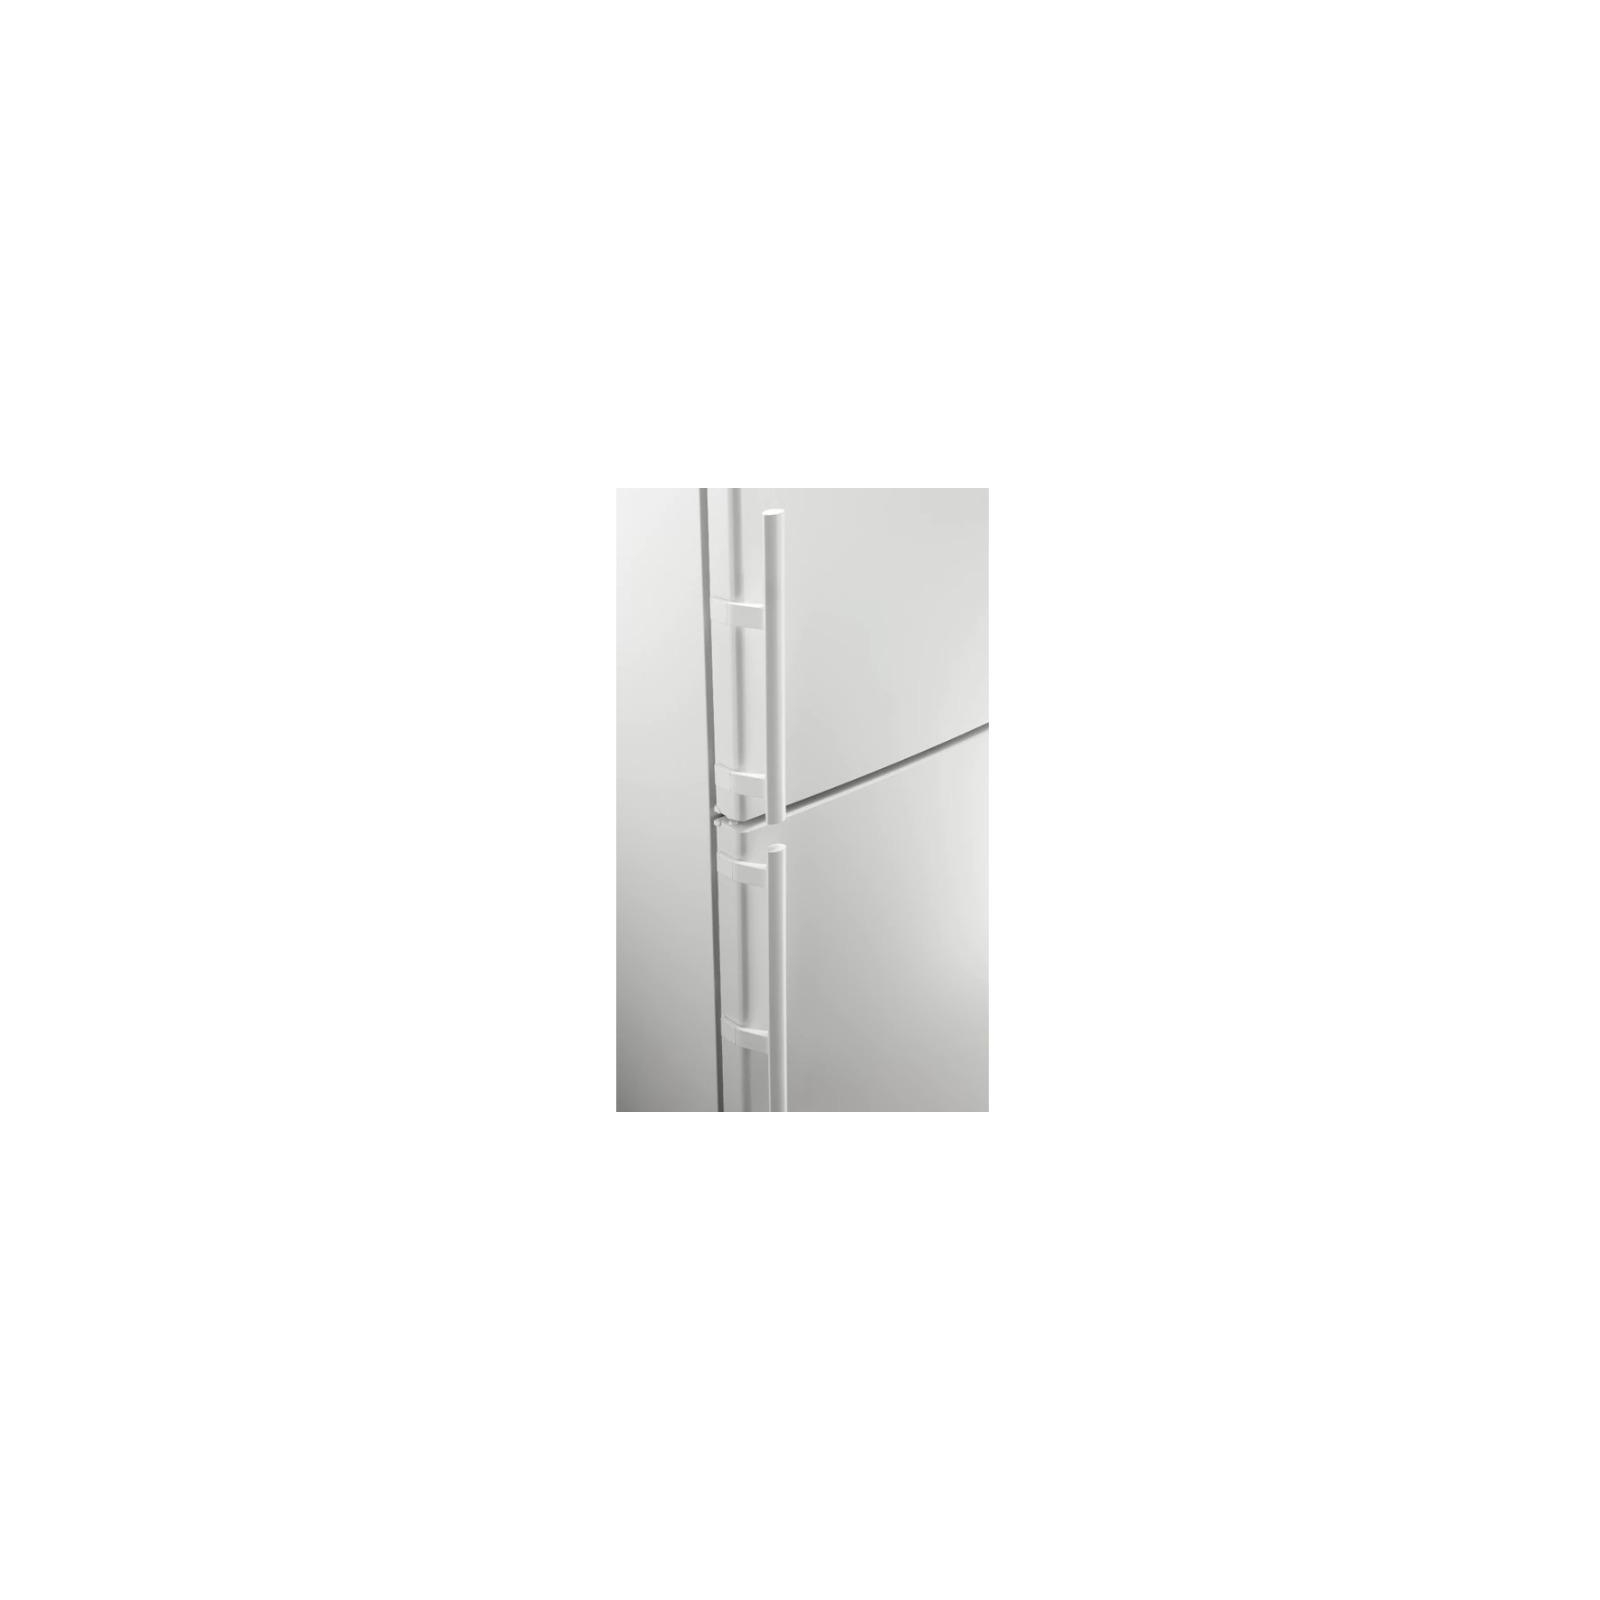 Холодильник Electrolux EN3853MOW зображення 4